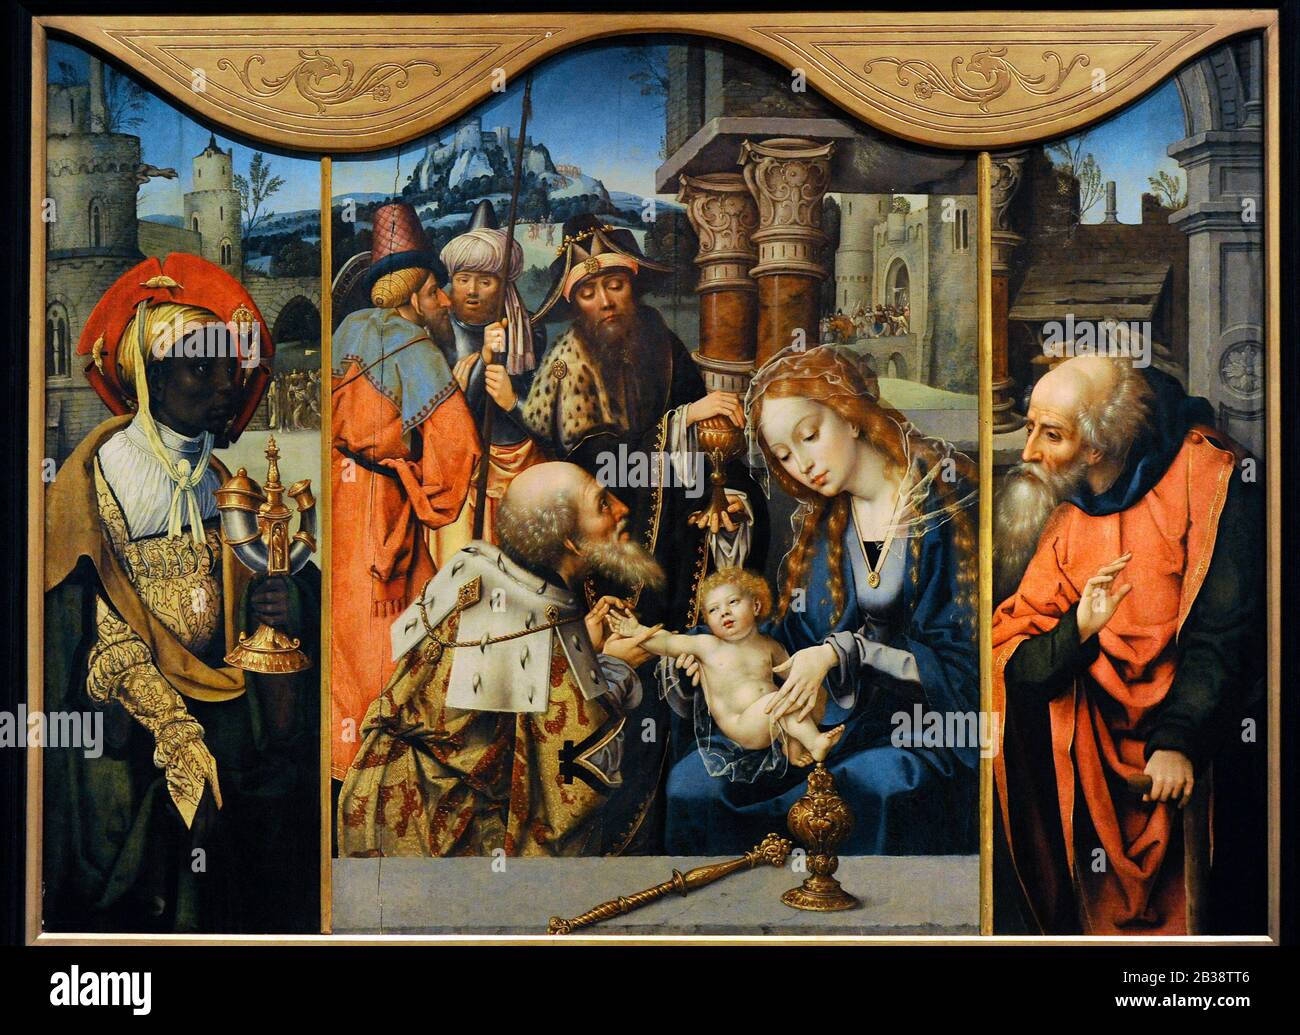 Jan van Dornicke. Erste Hälfte des 16. Jahrhunderts. Triptychon der Anbetung. Lazaro Galdiano Museum. Madrid. Spanien. Stockfoto